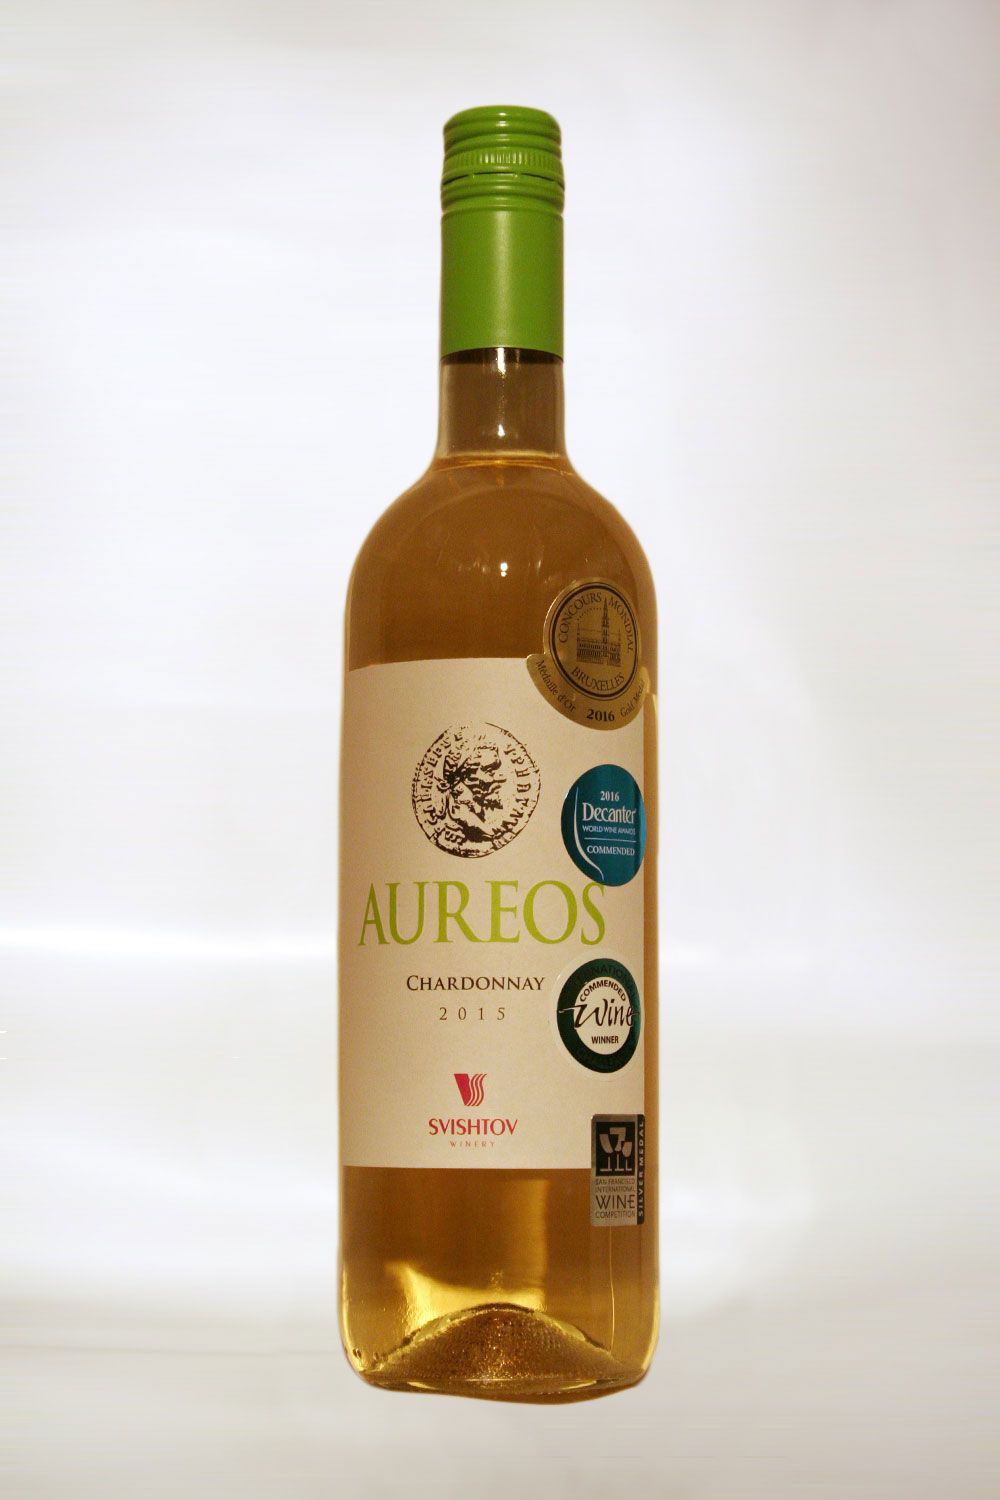 Aureos Chardonnay 2015